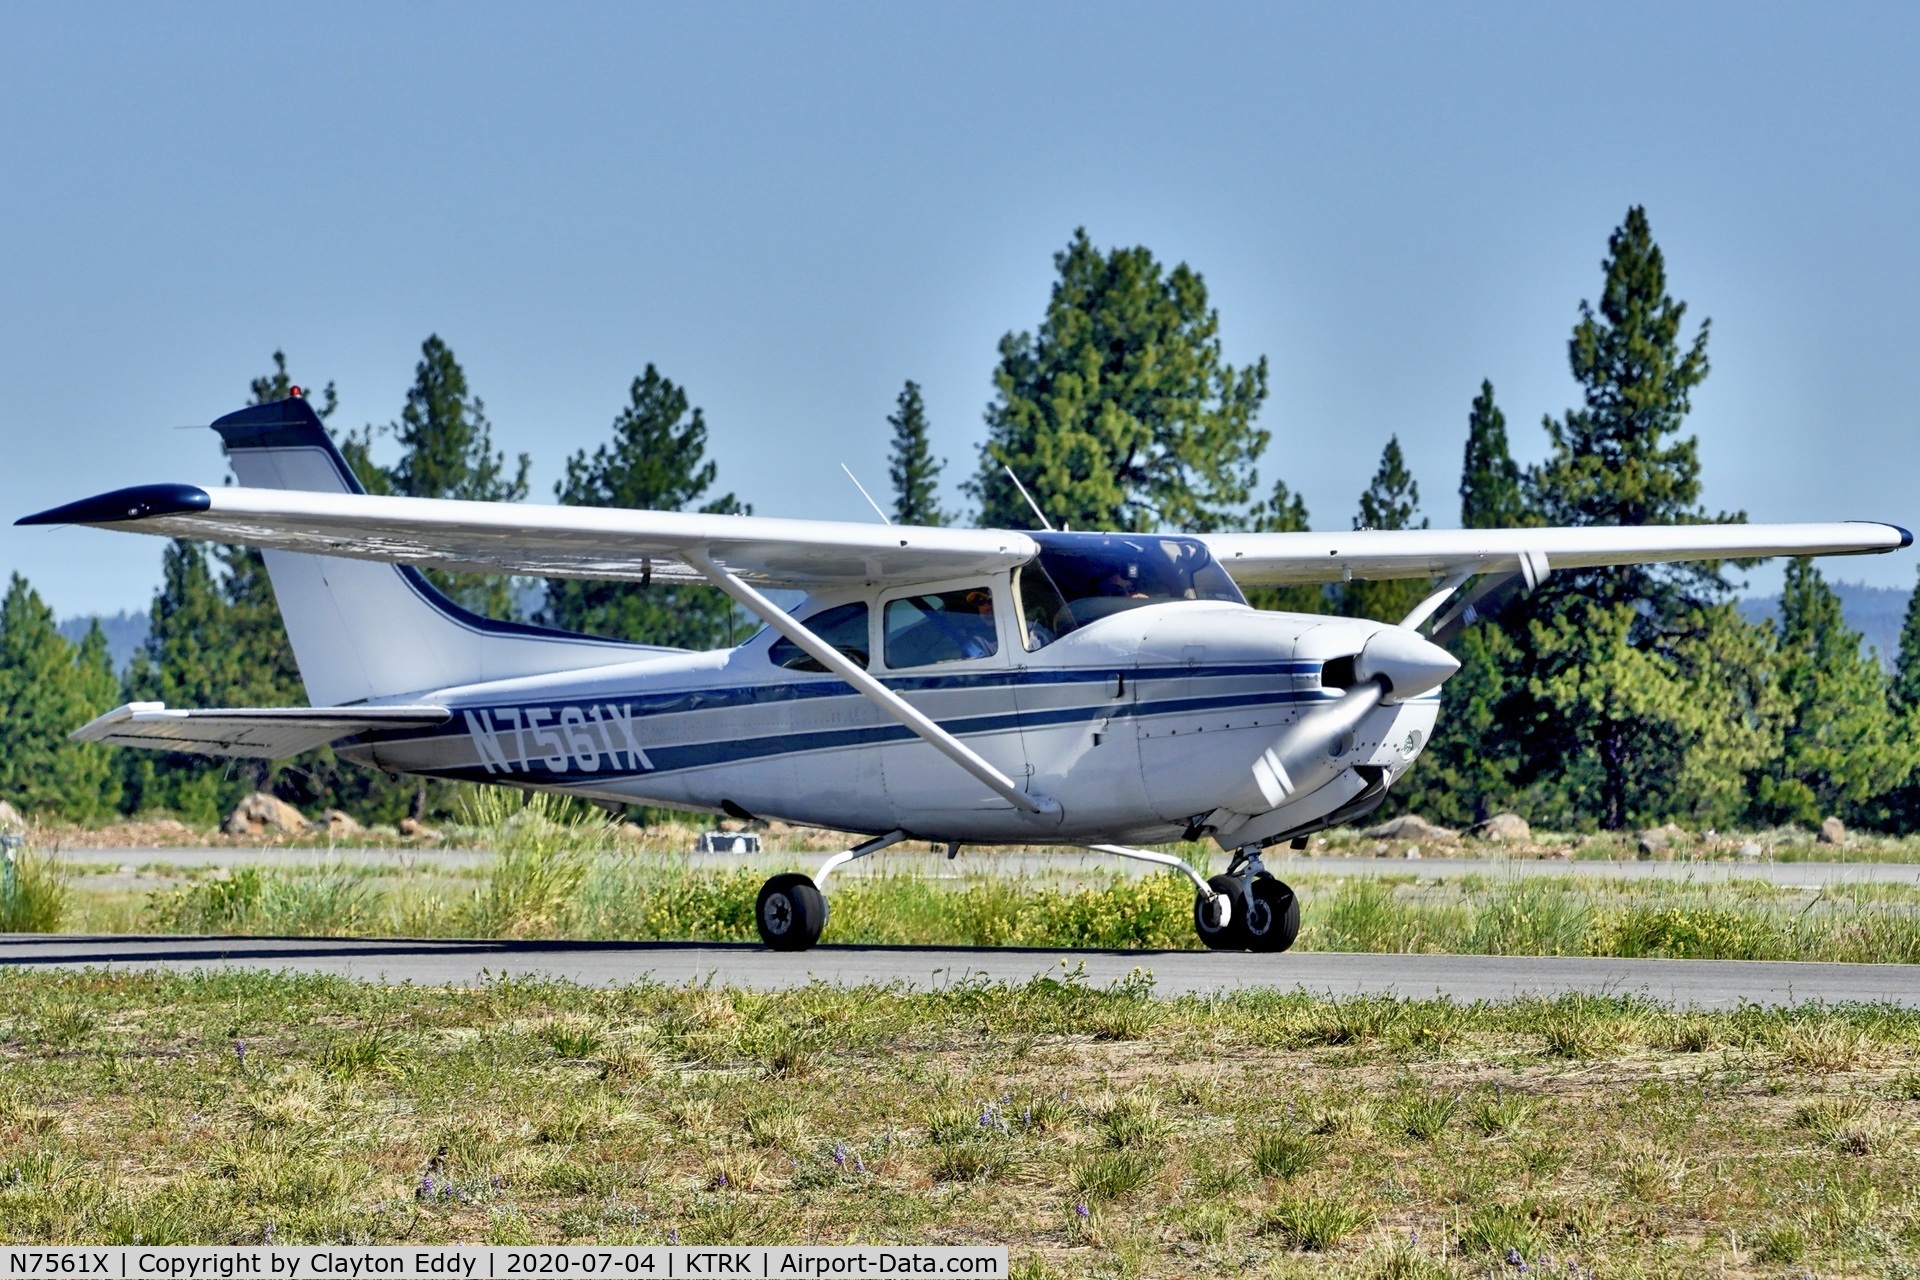 N7561X, 1977 Cessna R182 Skylane RG C/N R18200101, Truckee airport California 2020.